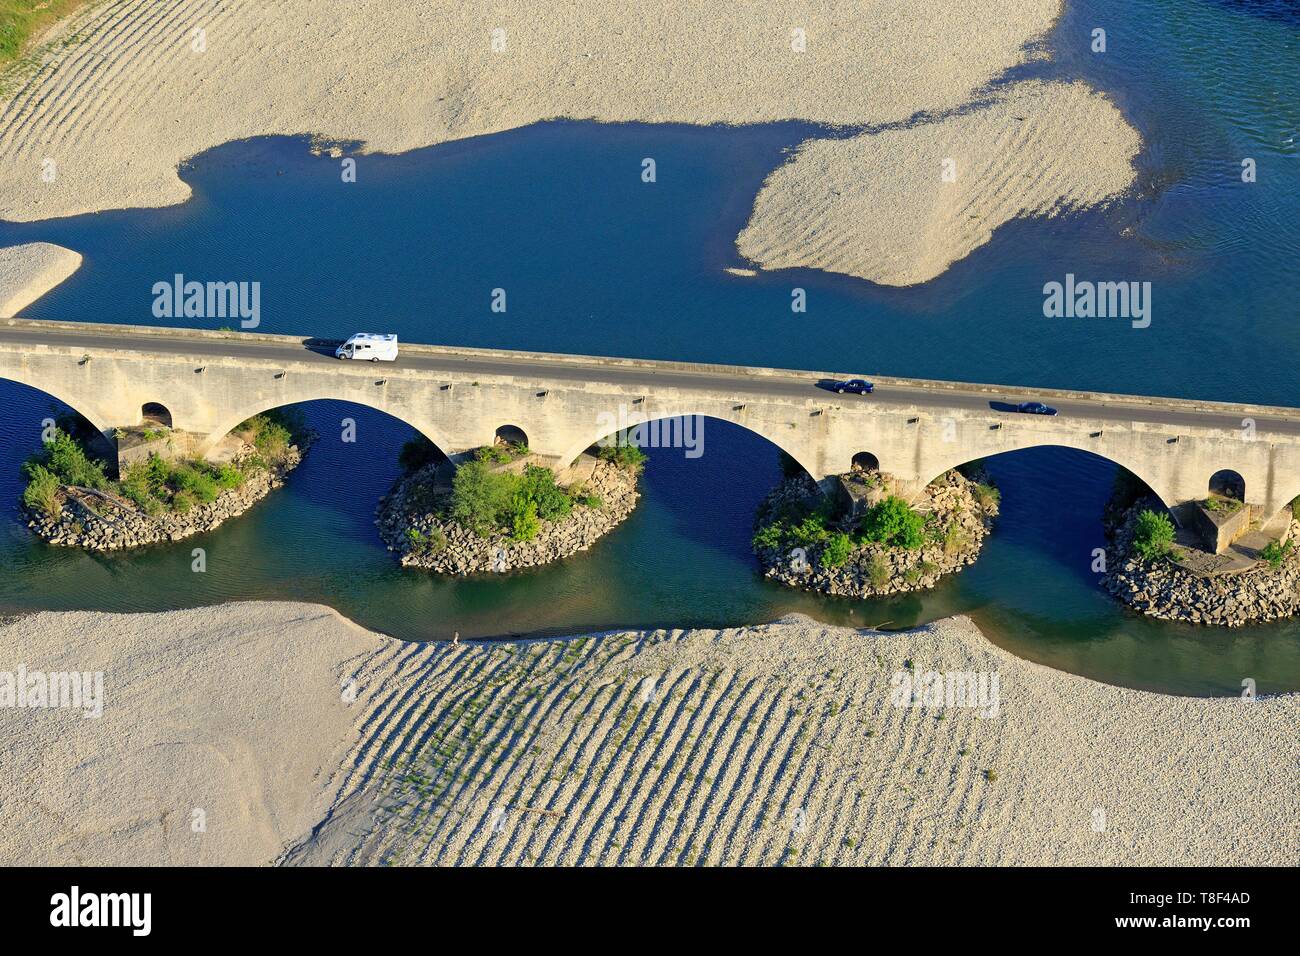 Frankreich, Gard, Pont Saint Esprit, fantastische Brücke des Heiligen  Geistes (XIII und XIV), die Rhone (Luftbild Stockfotografie - Alamy